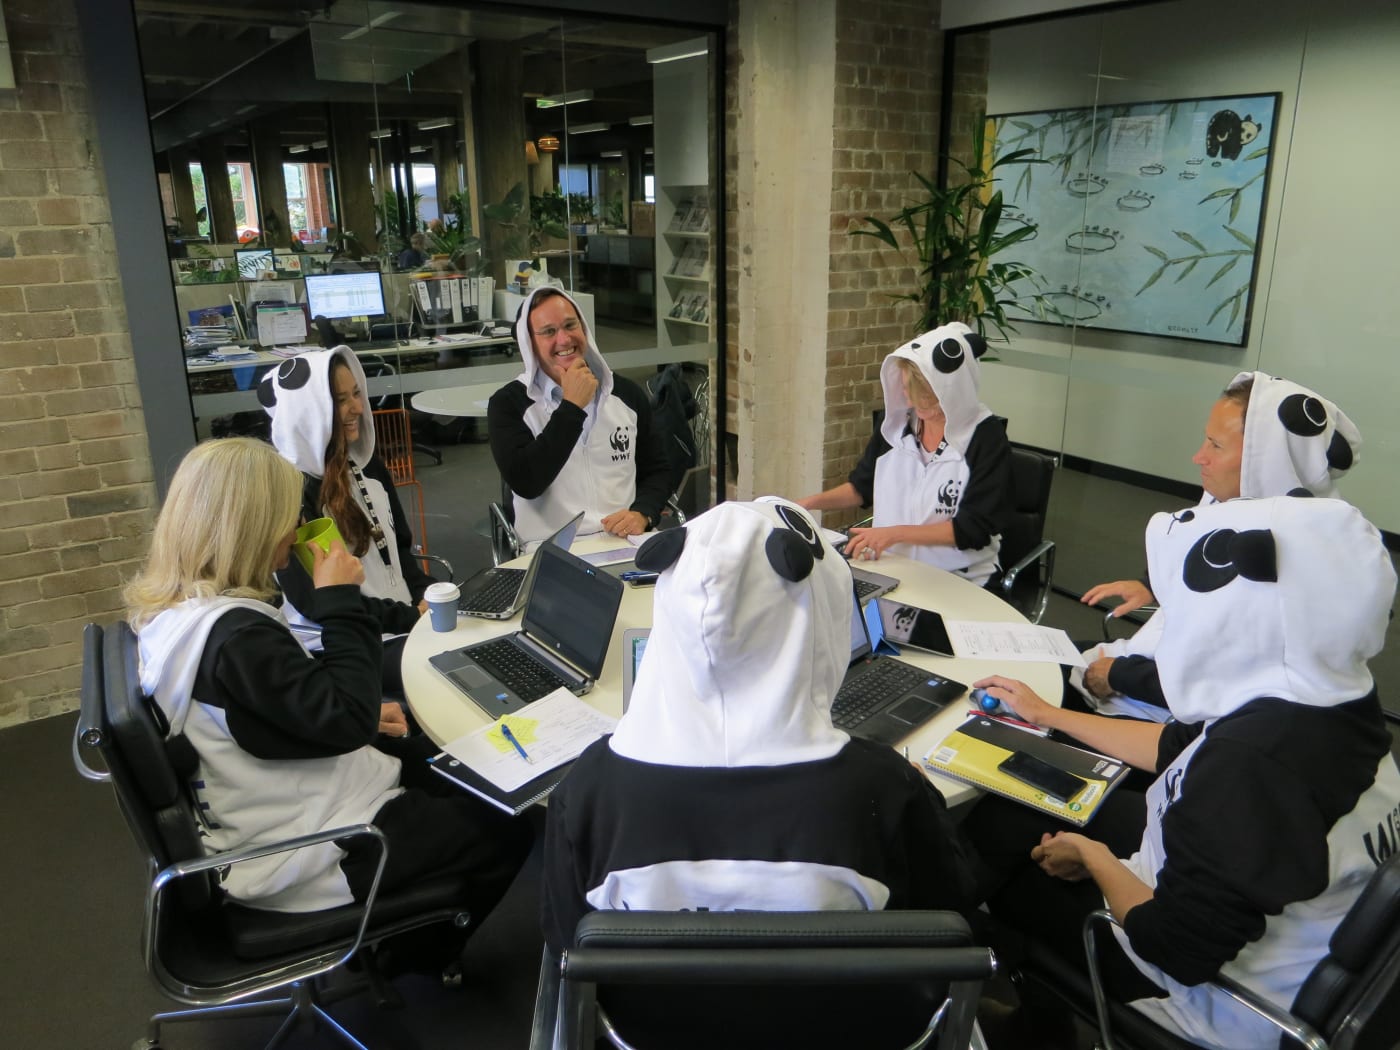 WWF staff members dress in their Panda onesies as part of Wild Onesie Week.